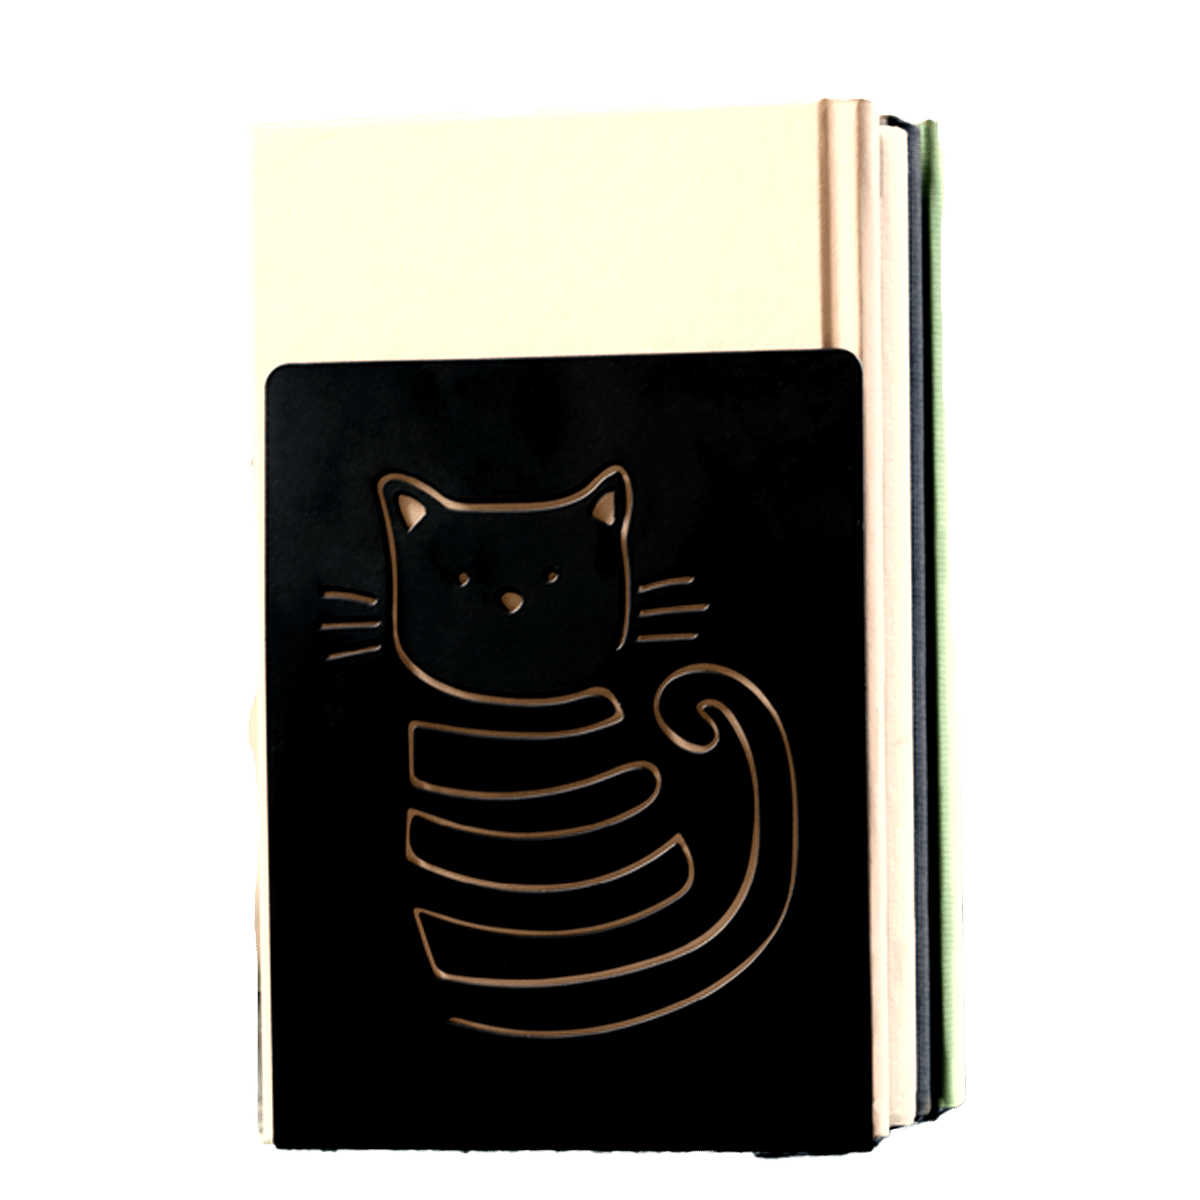 Håll ordning på böckerna med katter